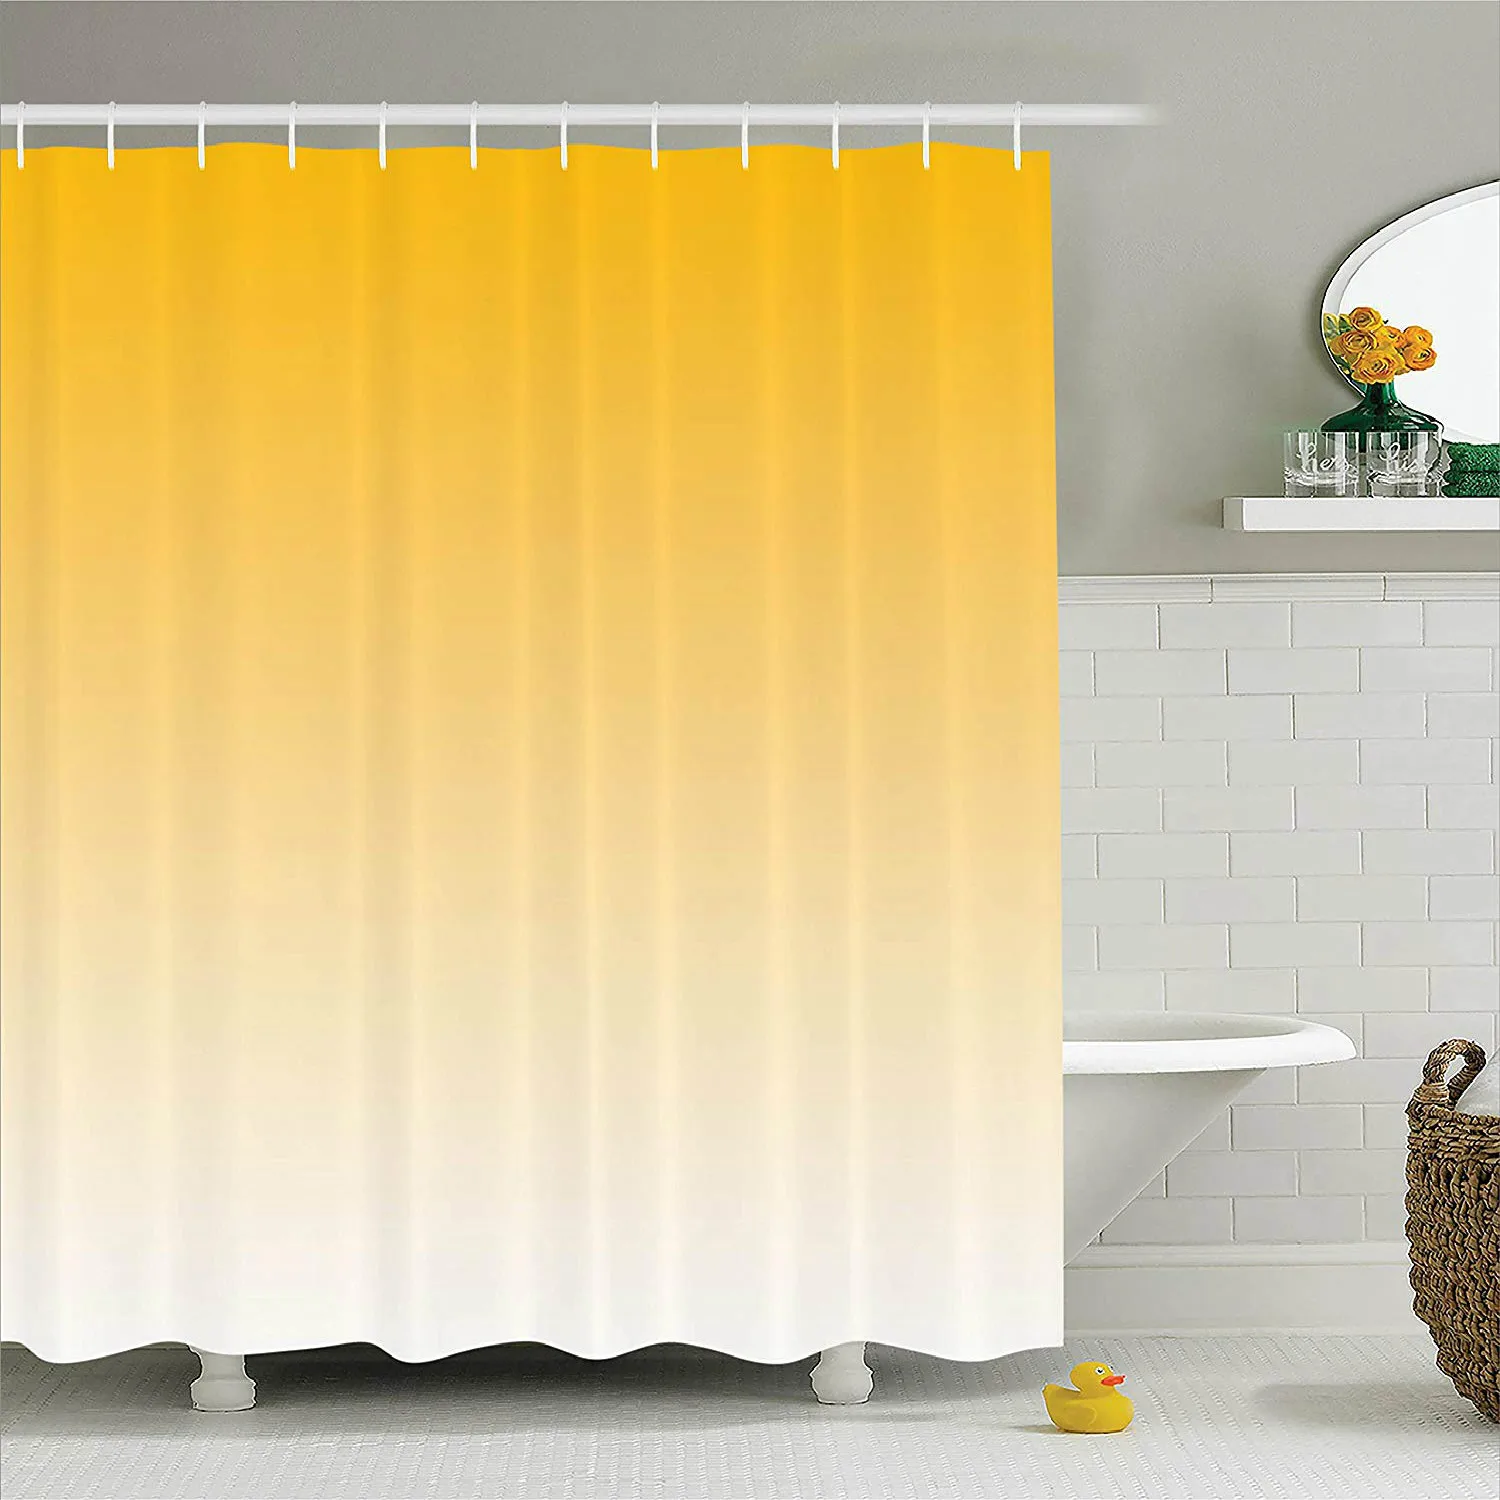 Душа Шторы лето любовь на пляже тема вдохновила для Желтый Современная дизайнерская ткань Ванная комната Декор